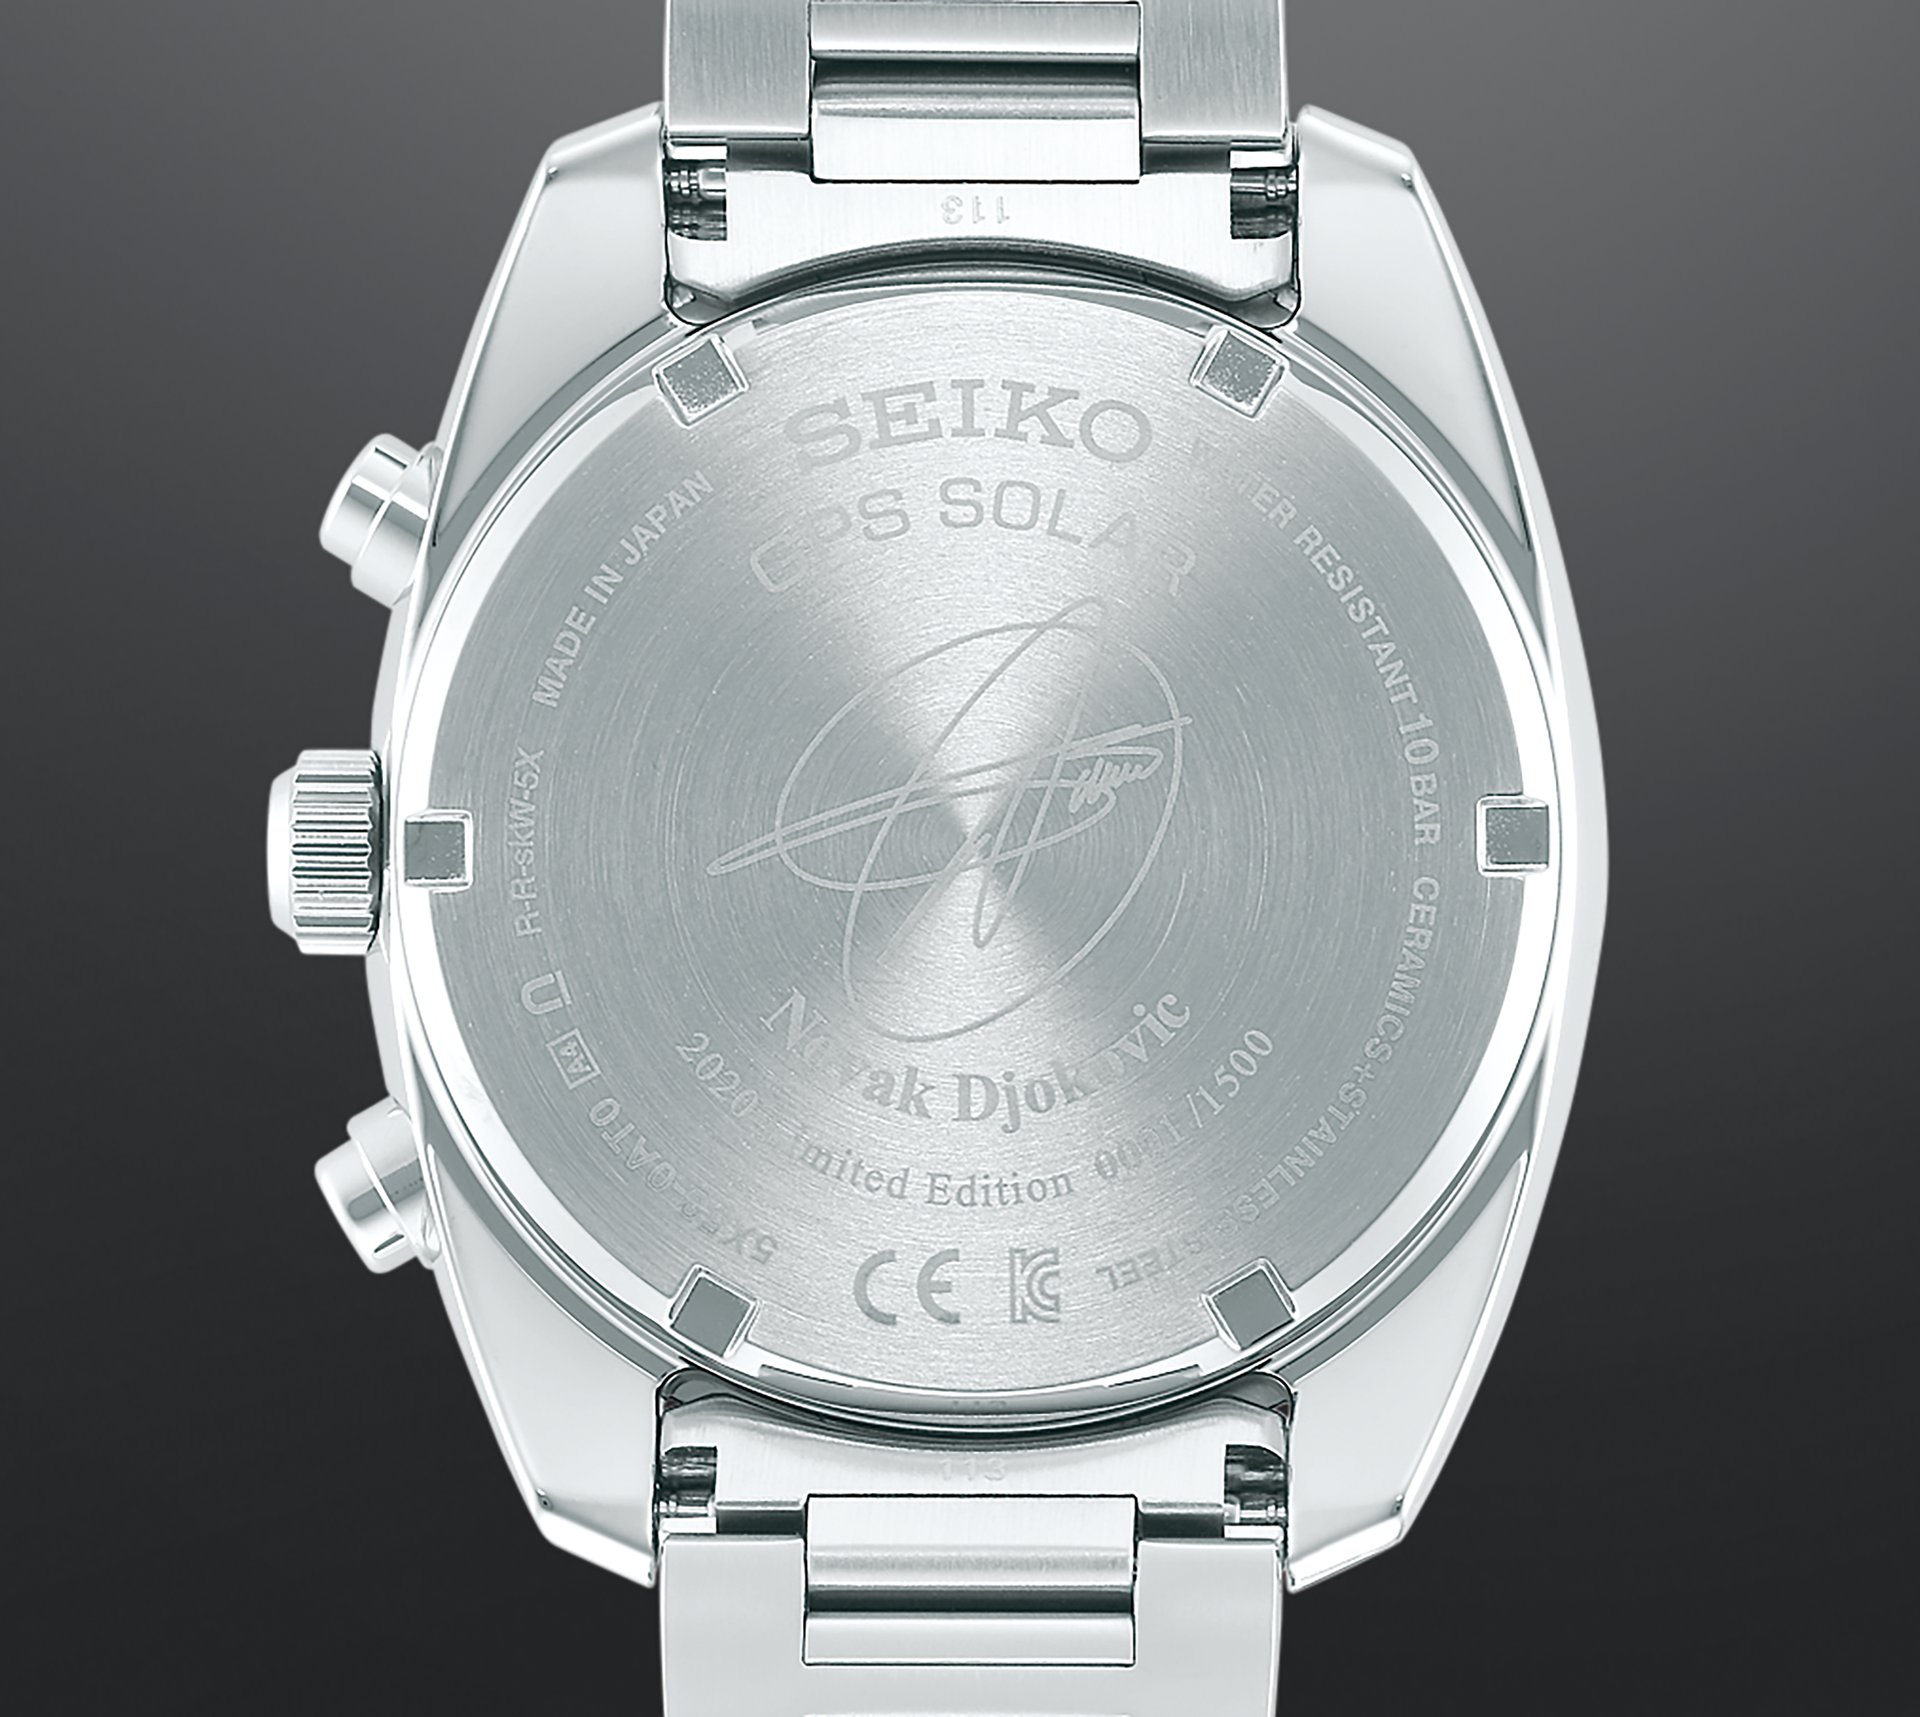 Seiko Astron GPS Solar Novak Djokovic 2020 Limited Edition - Watch I Love